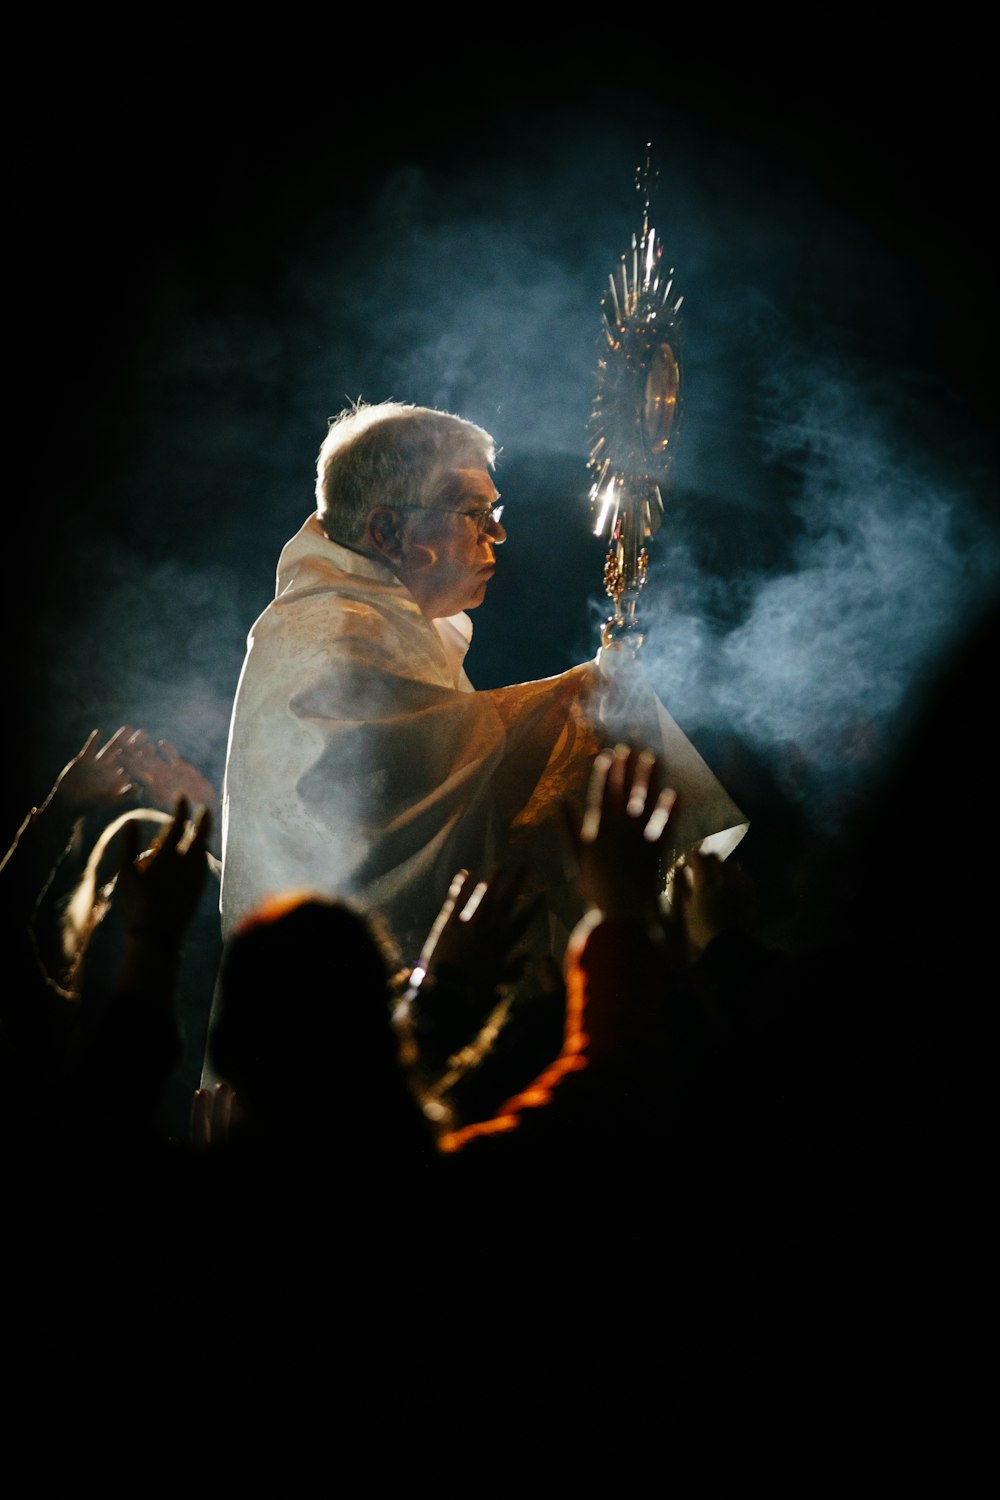 man holding stick wearing white robe